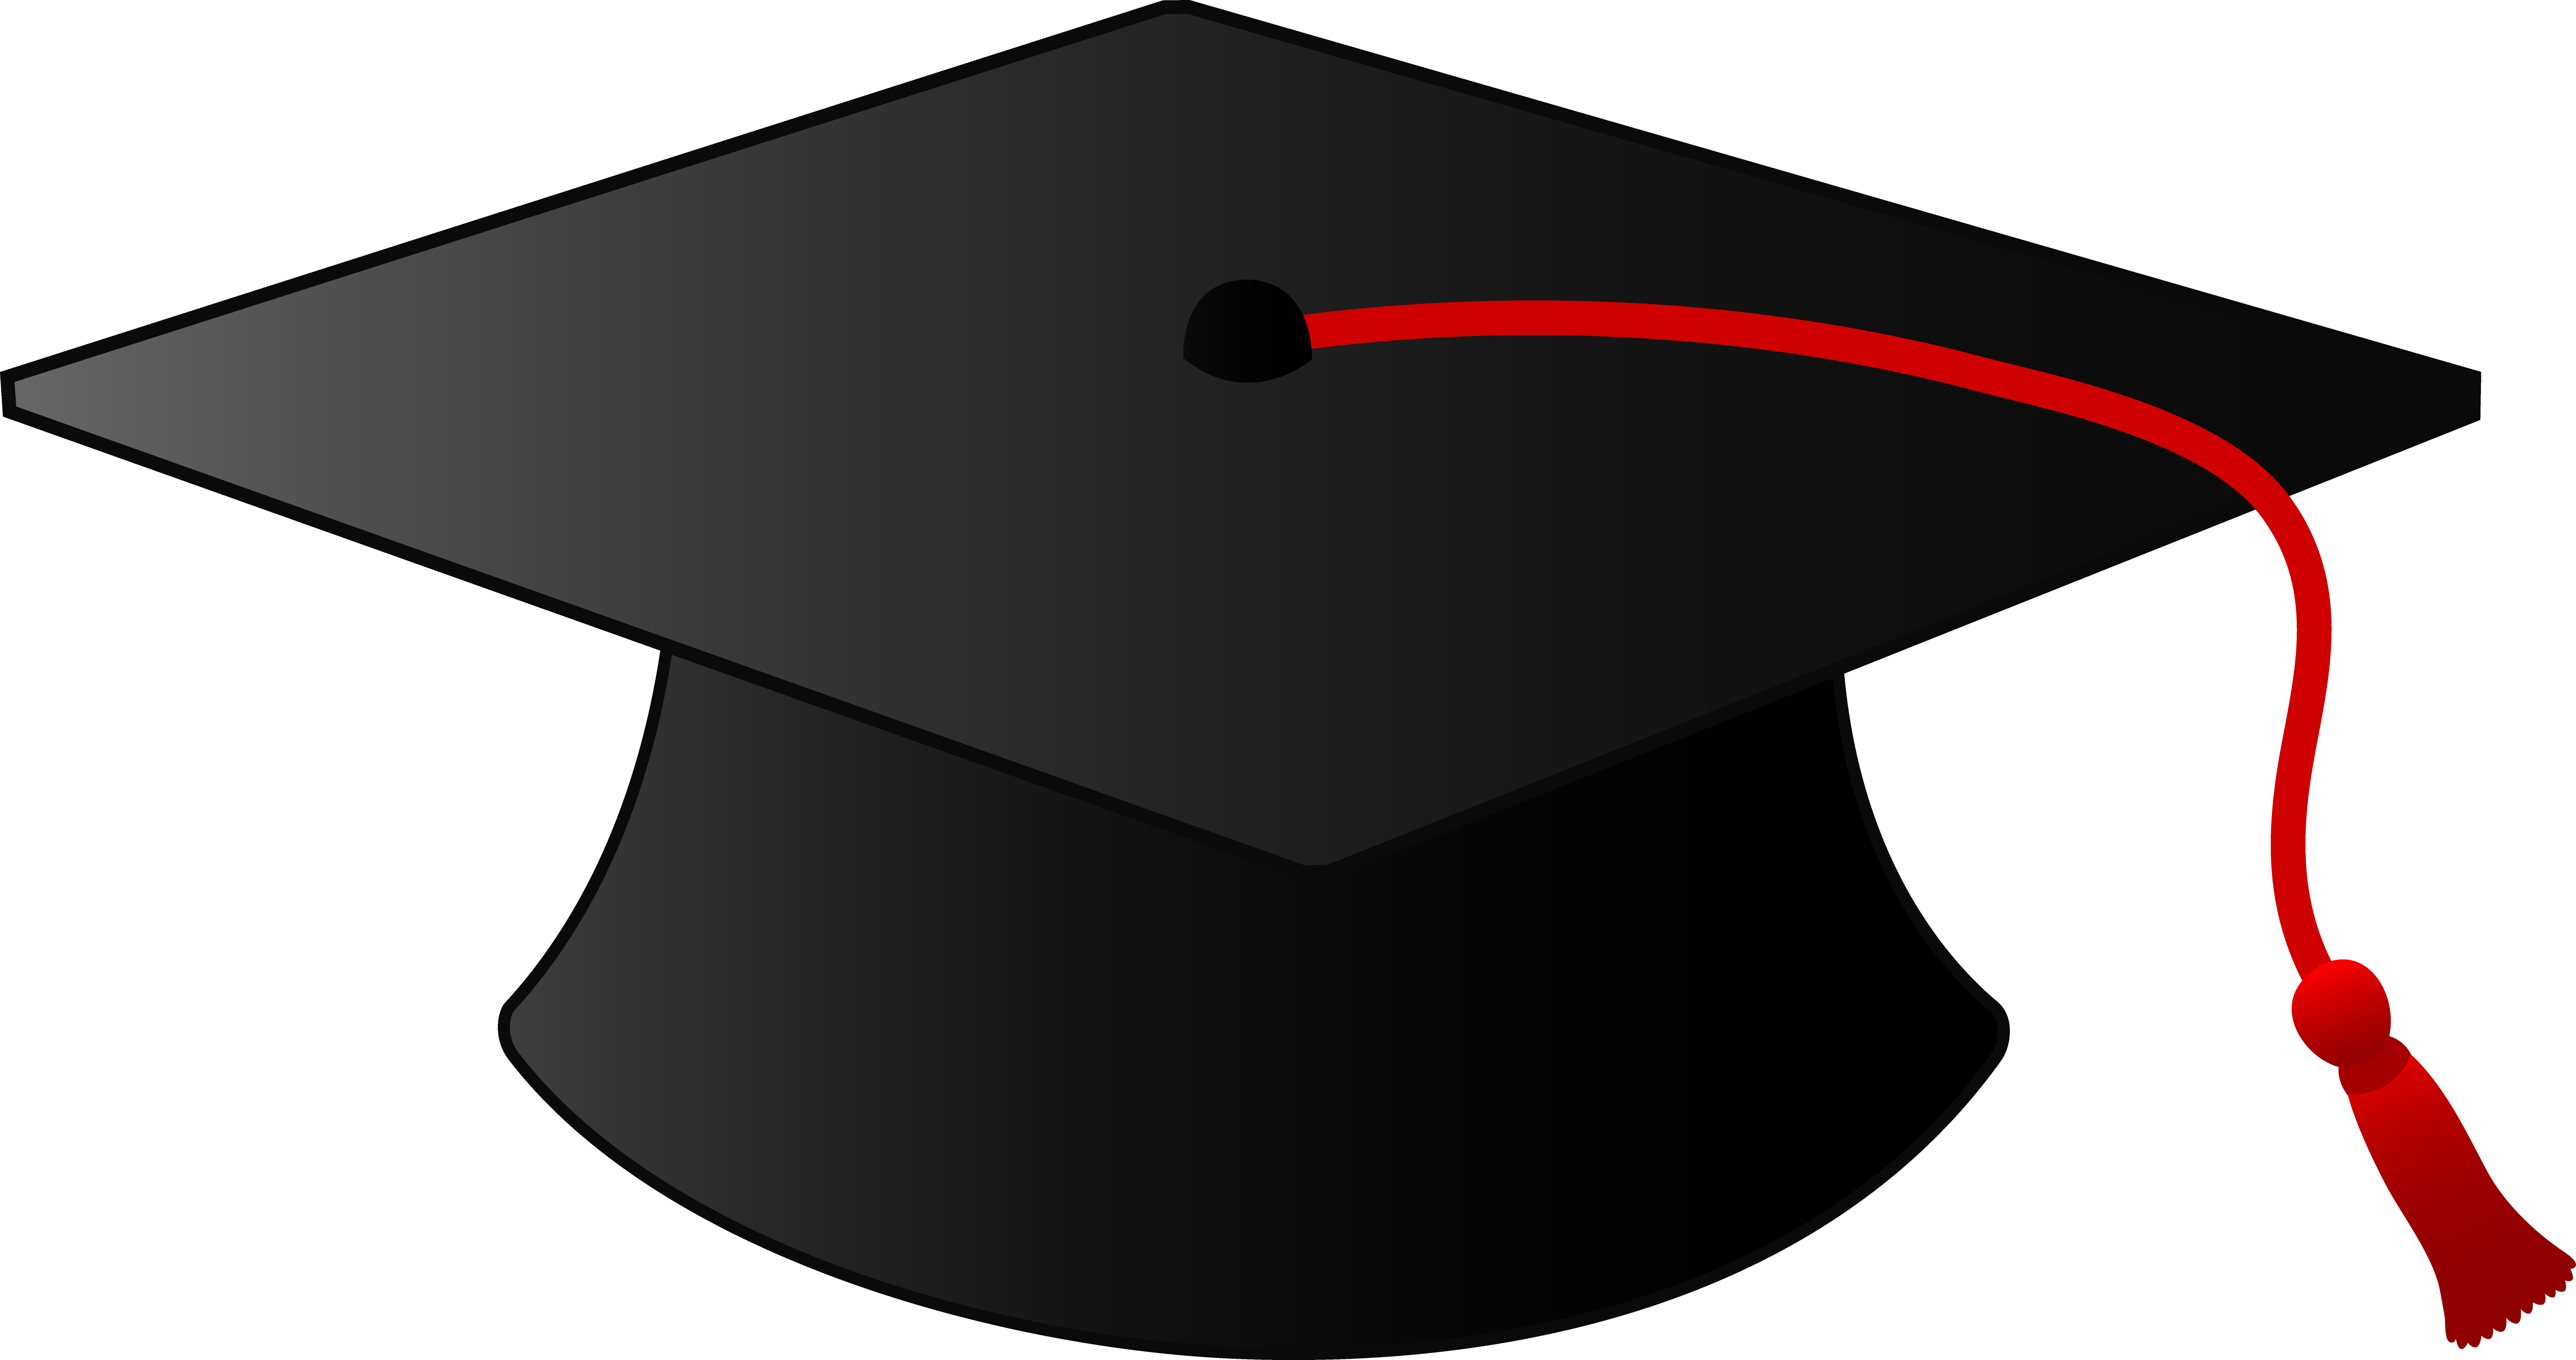 Graduation Hat Clip Art u0026 - Graduation Hats Clip Art